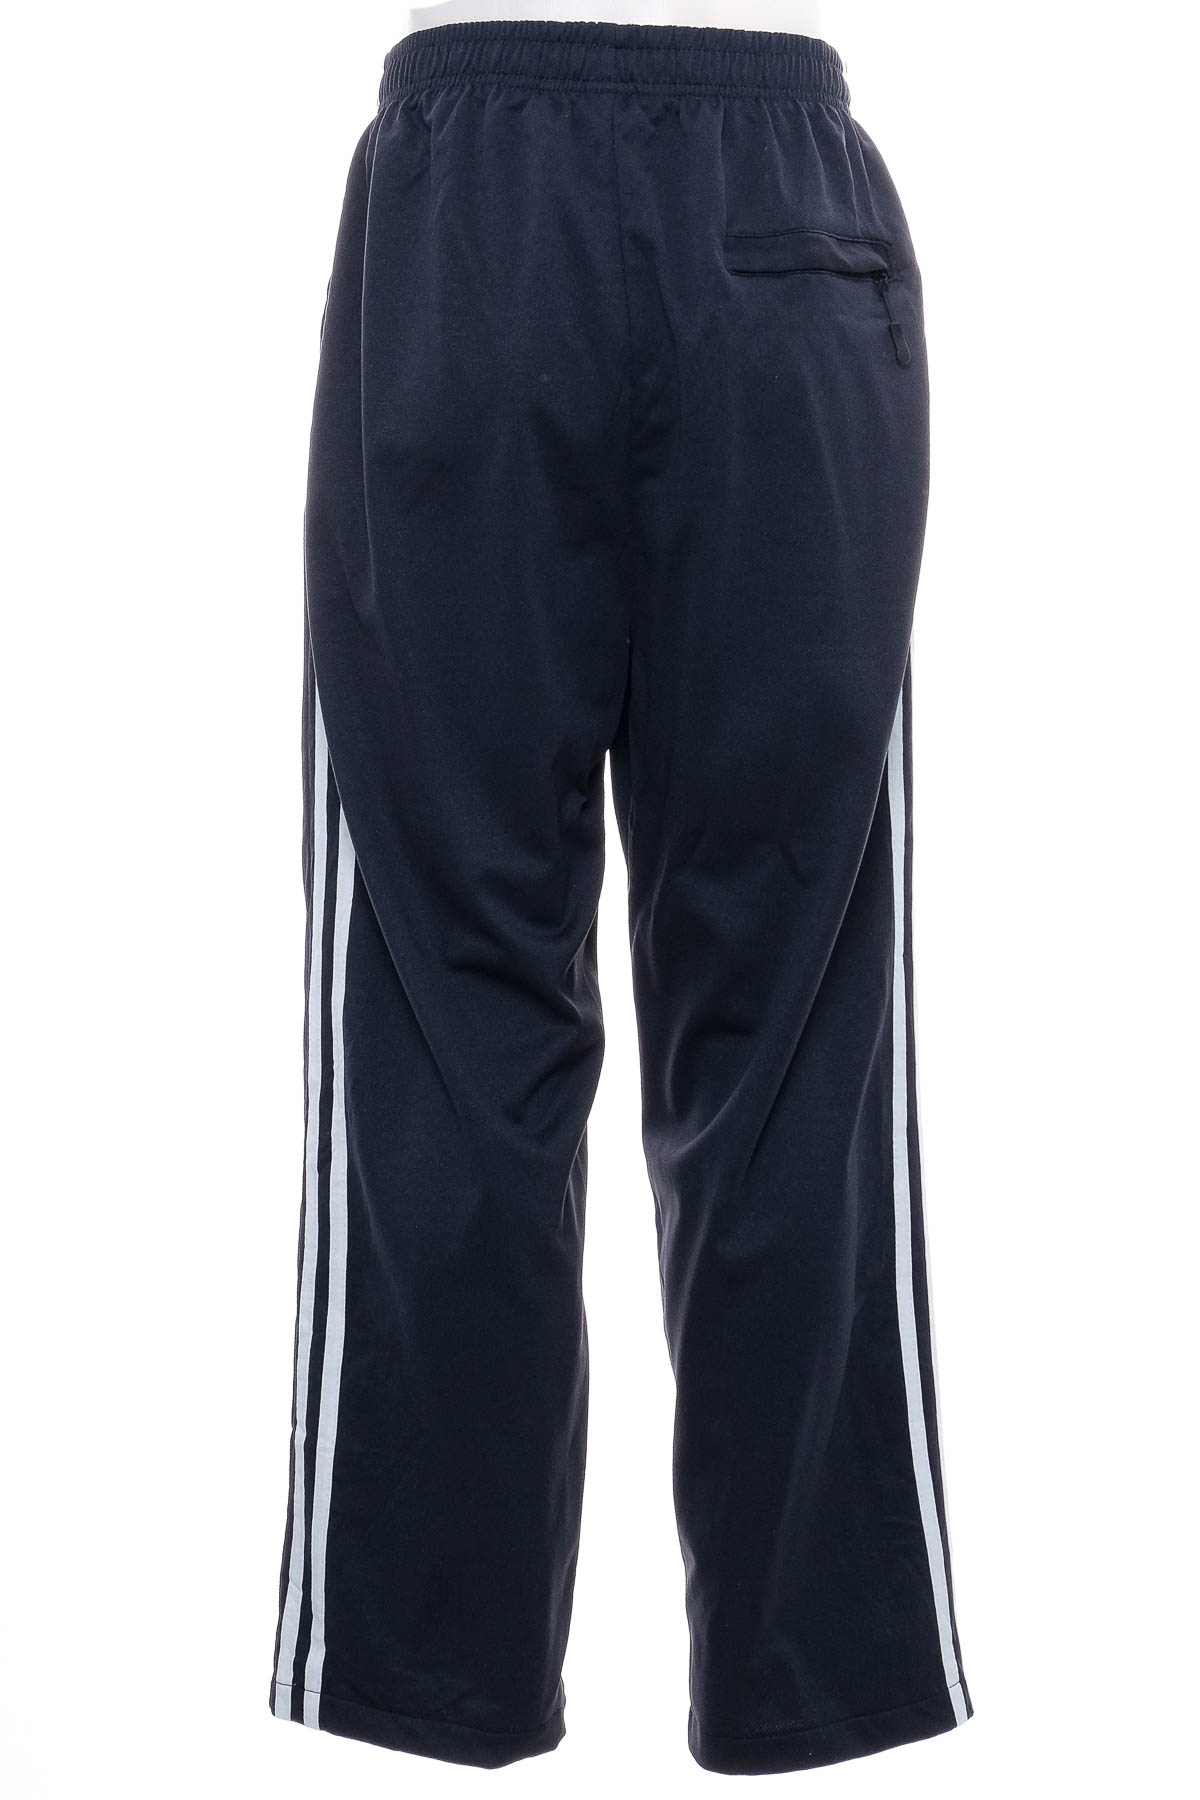 Męskie spodnie sportowe - TeX Basics - 1